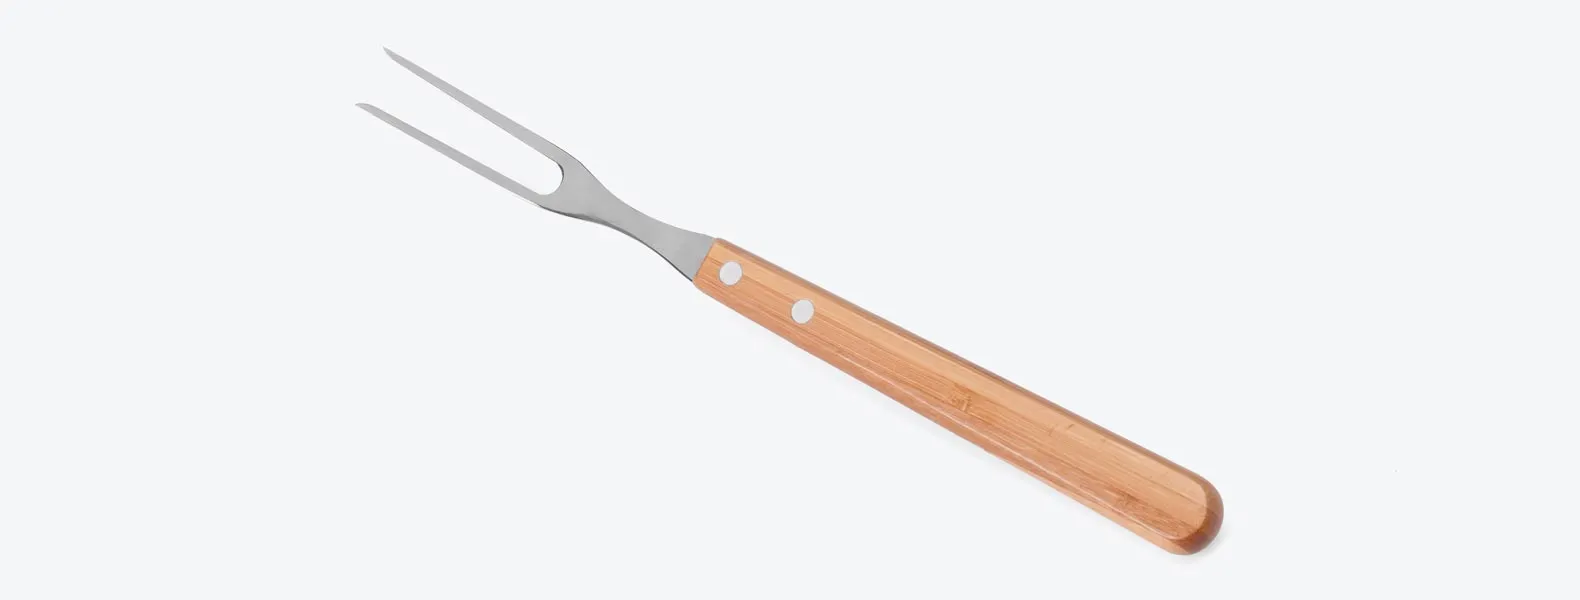 Kit com faca 8'', faca 5 para desossar e garfo em Bambu/Inox. Como cortesia, na faca 8 fazemos uma gravação com os cortes do boi.